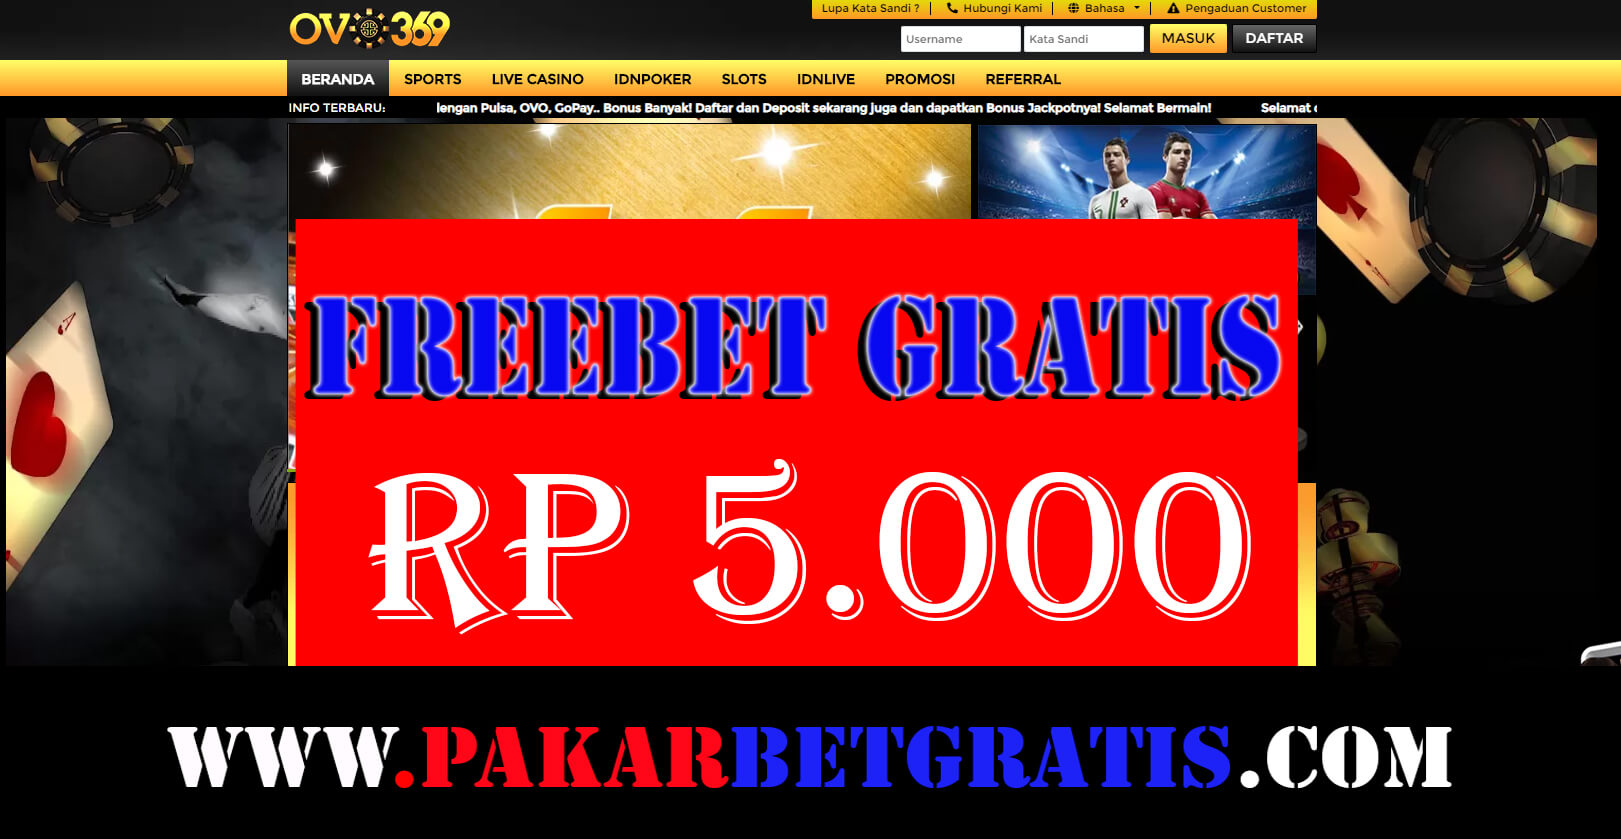 Freebet Gratis Ovo369 Rp 5.000 Tanpa deposit